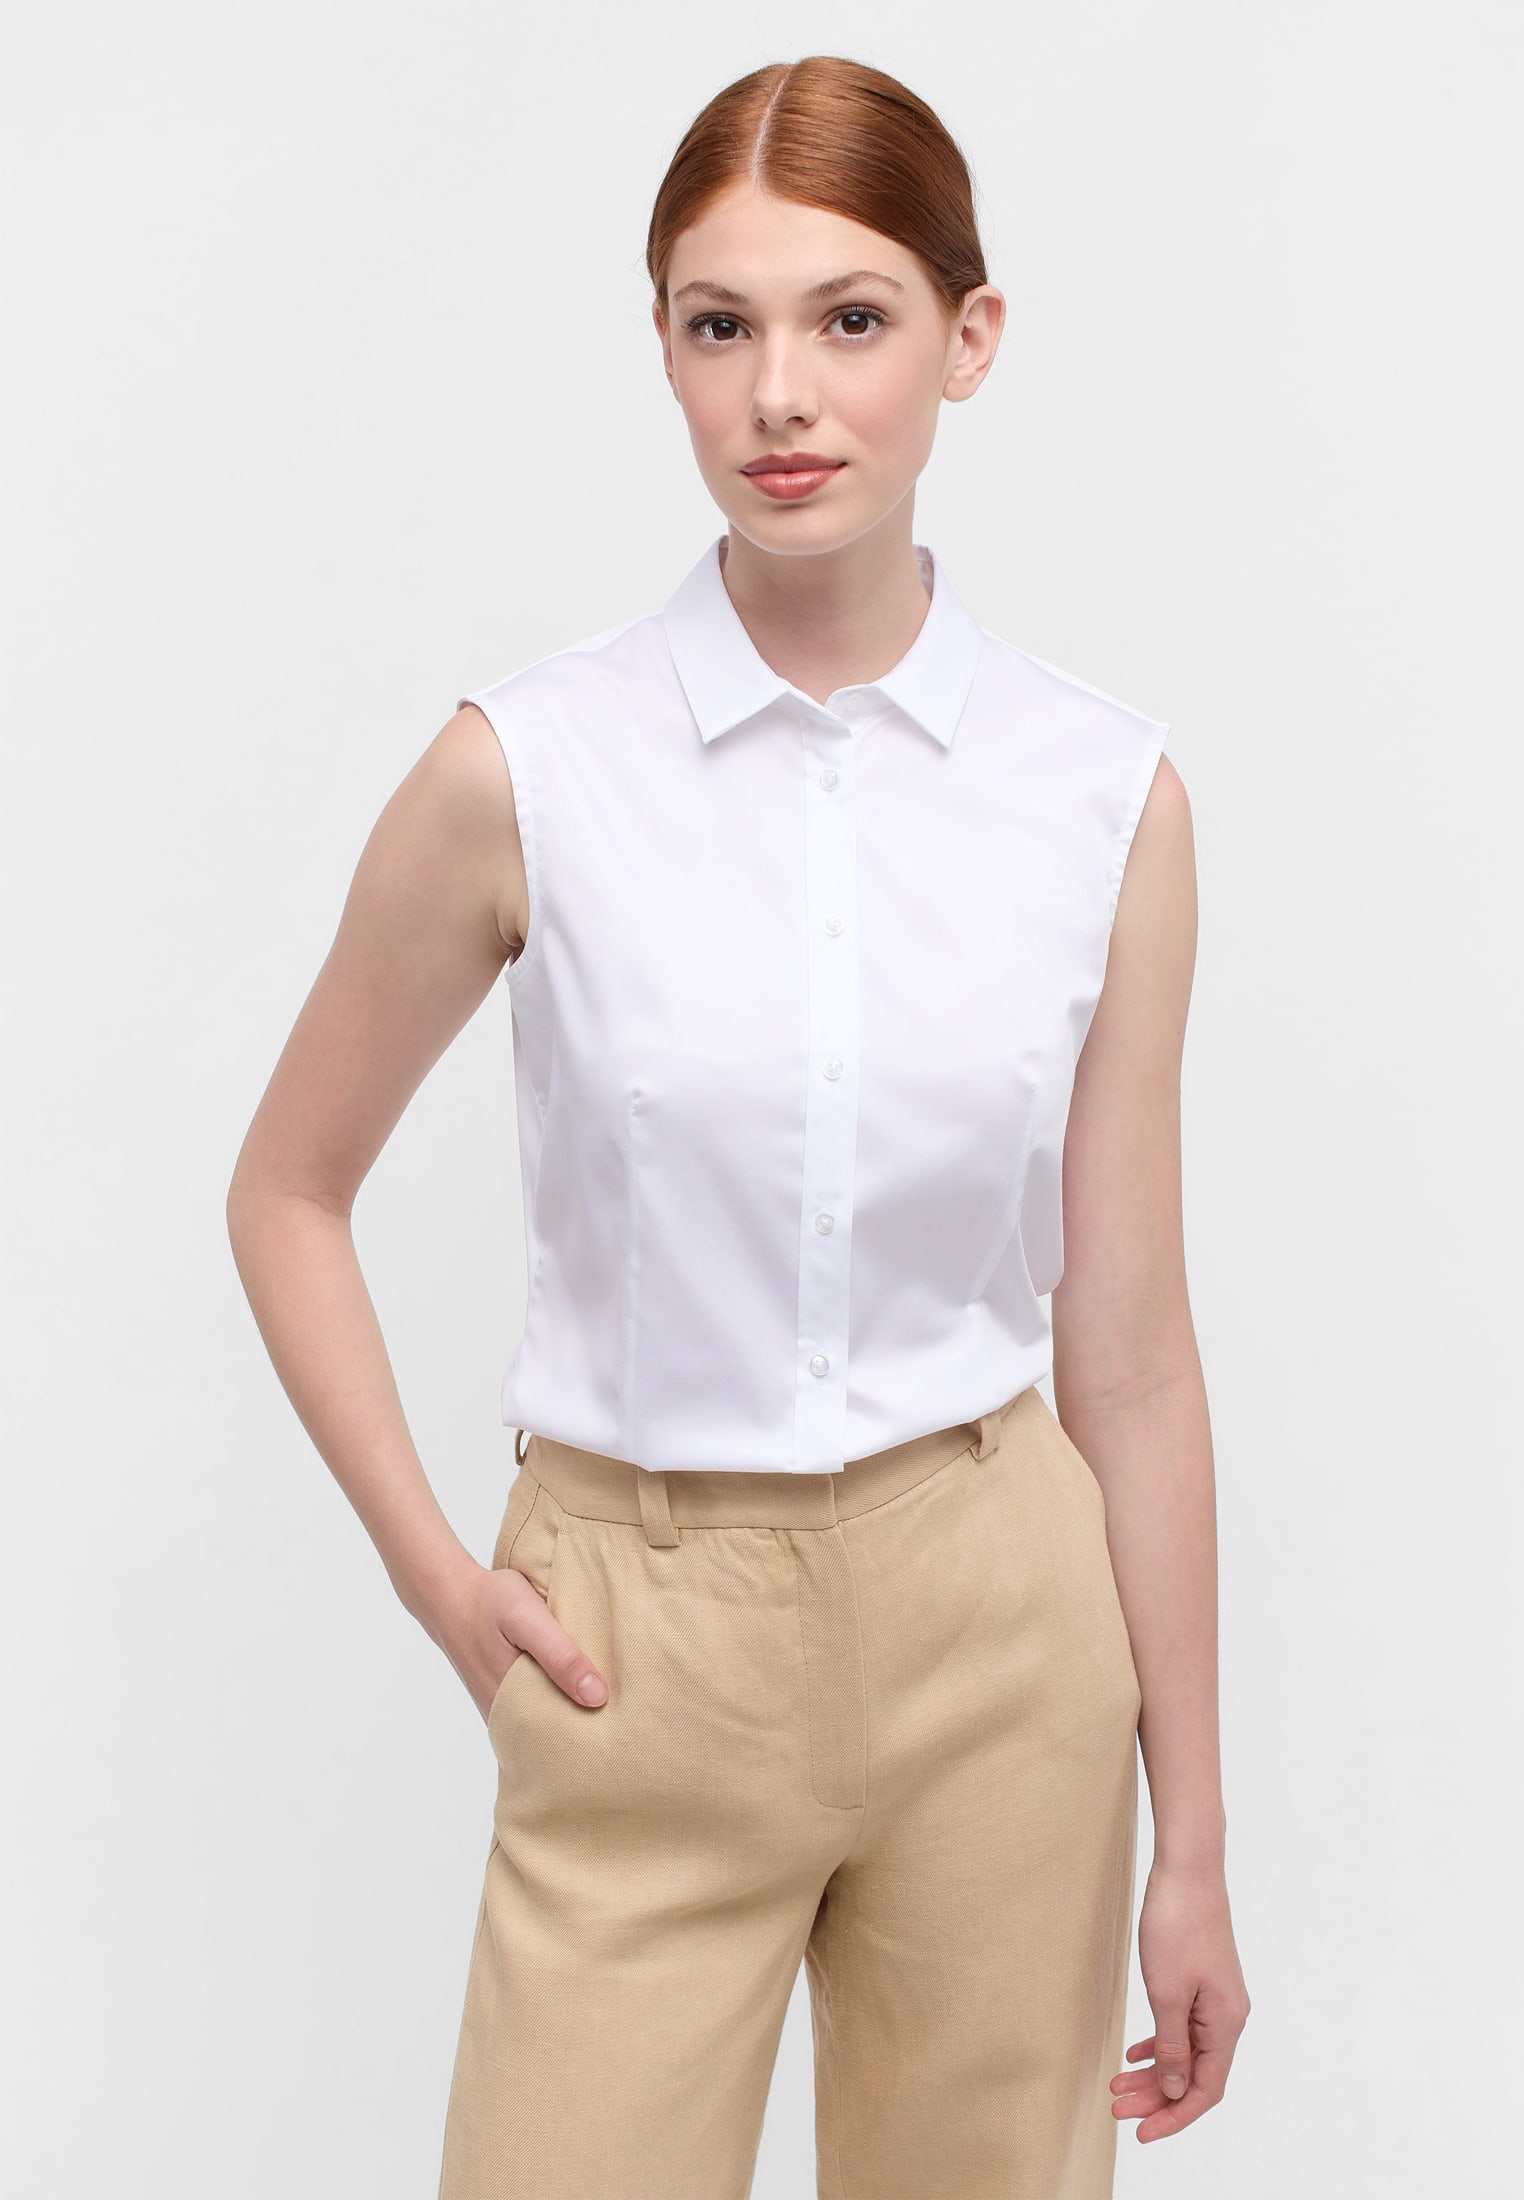 Satin Shirt Bluse in weiß unifarben | weiß | 34 | ohne Arm |  2BL03768-00-01-34-sl